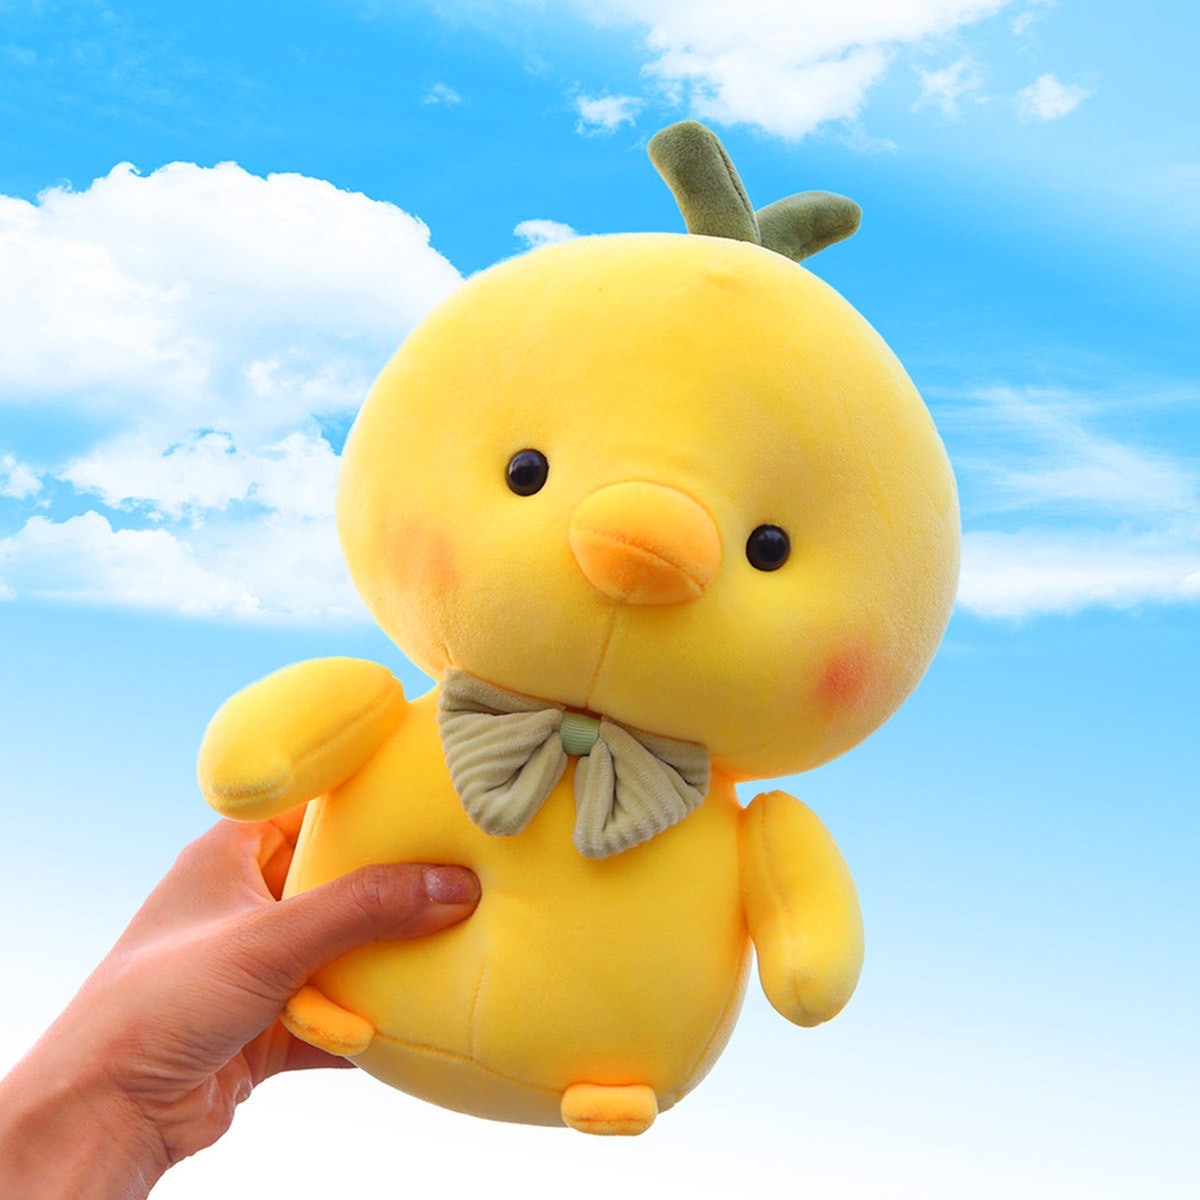 Little Yellow Chick Stuffed Animal